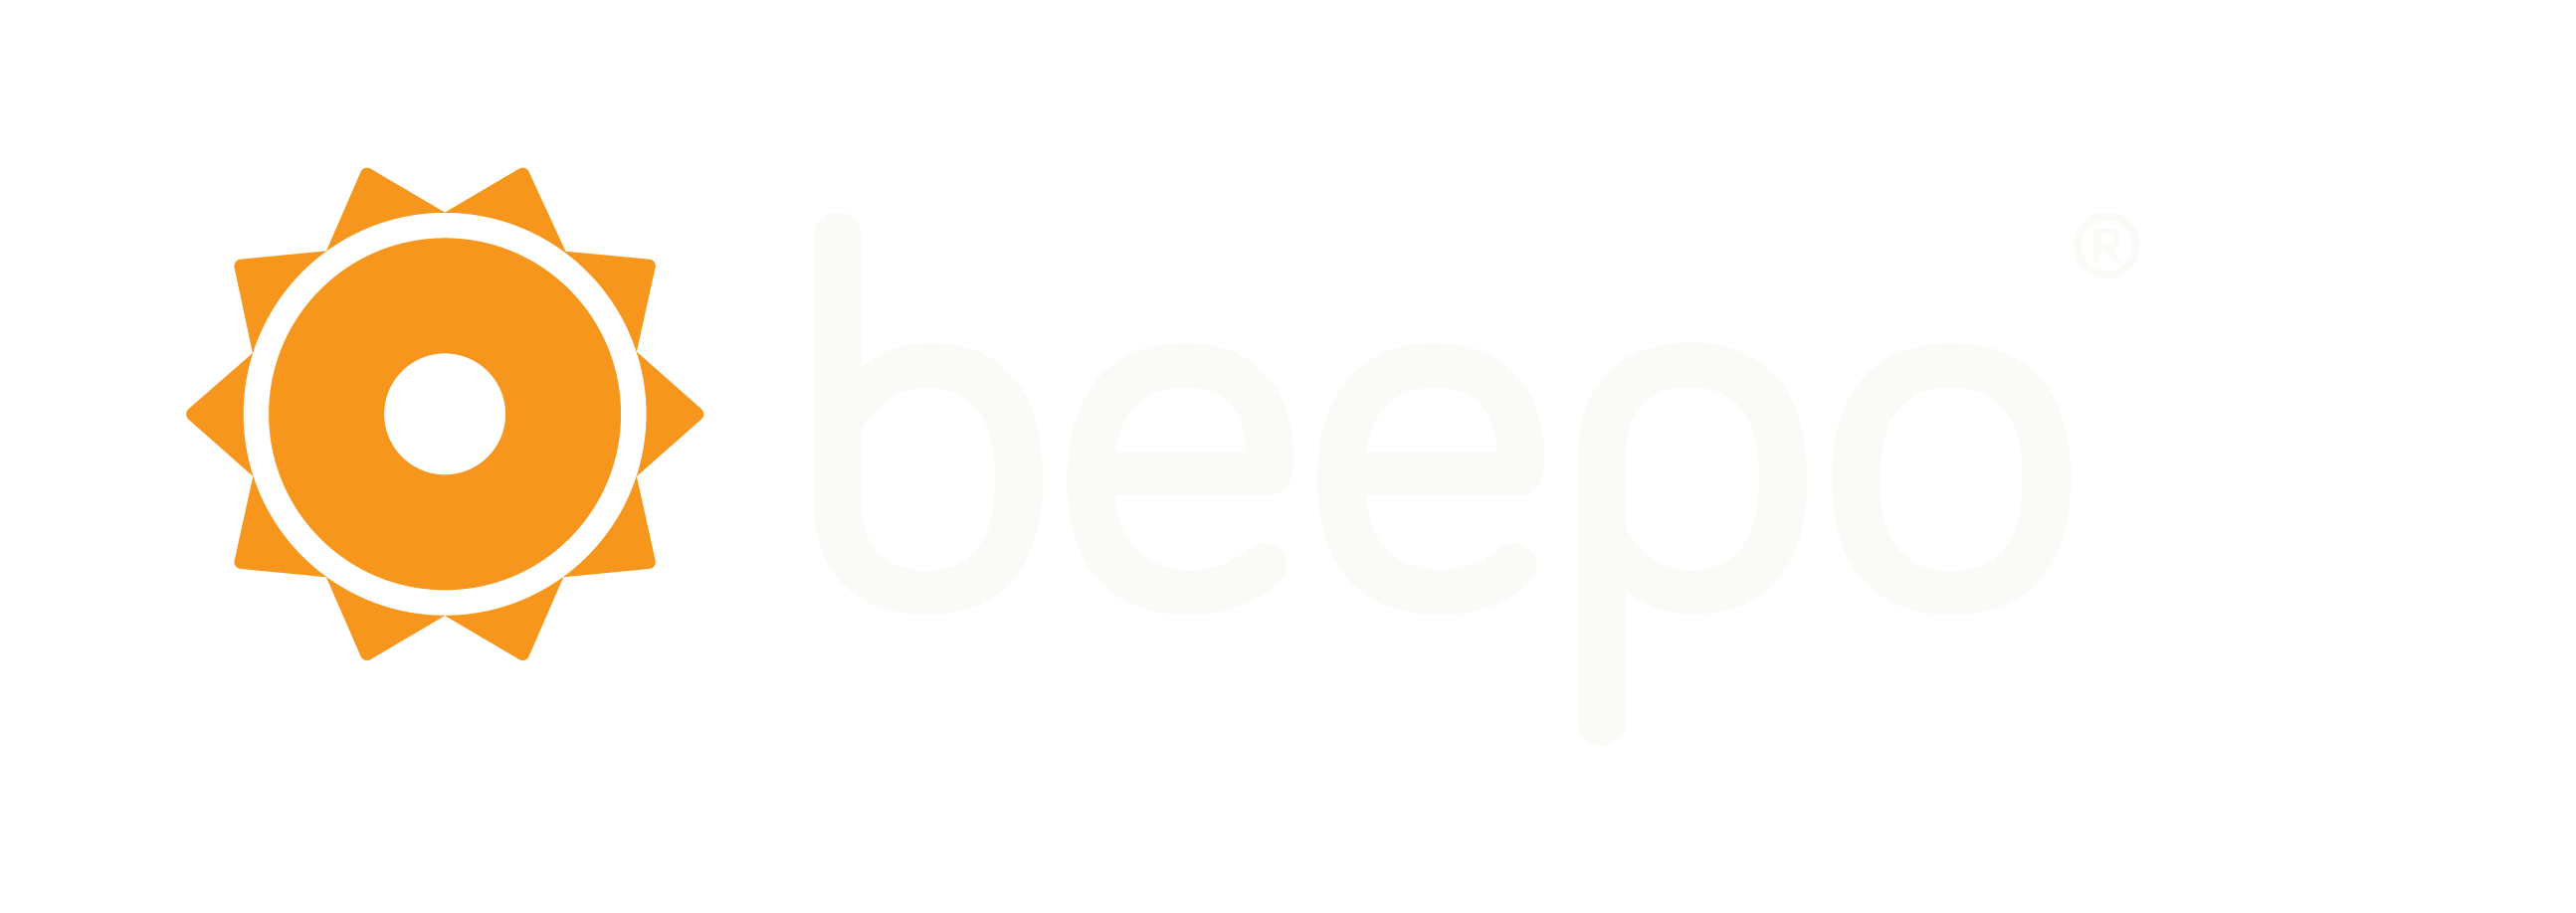 beepo-logo-white